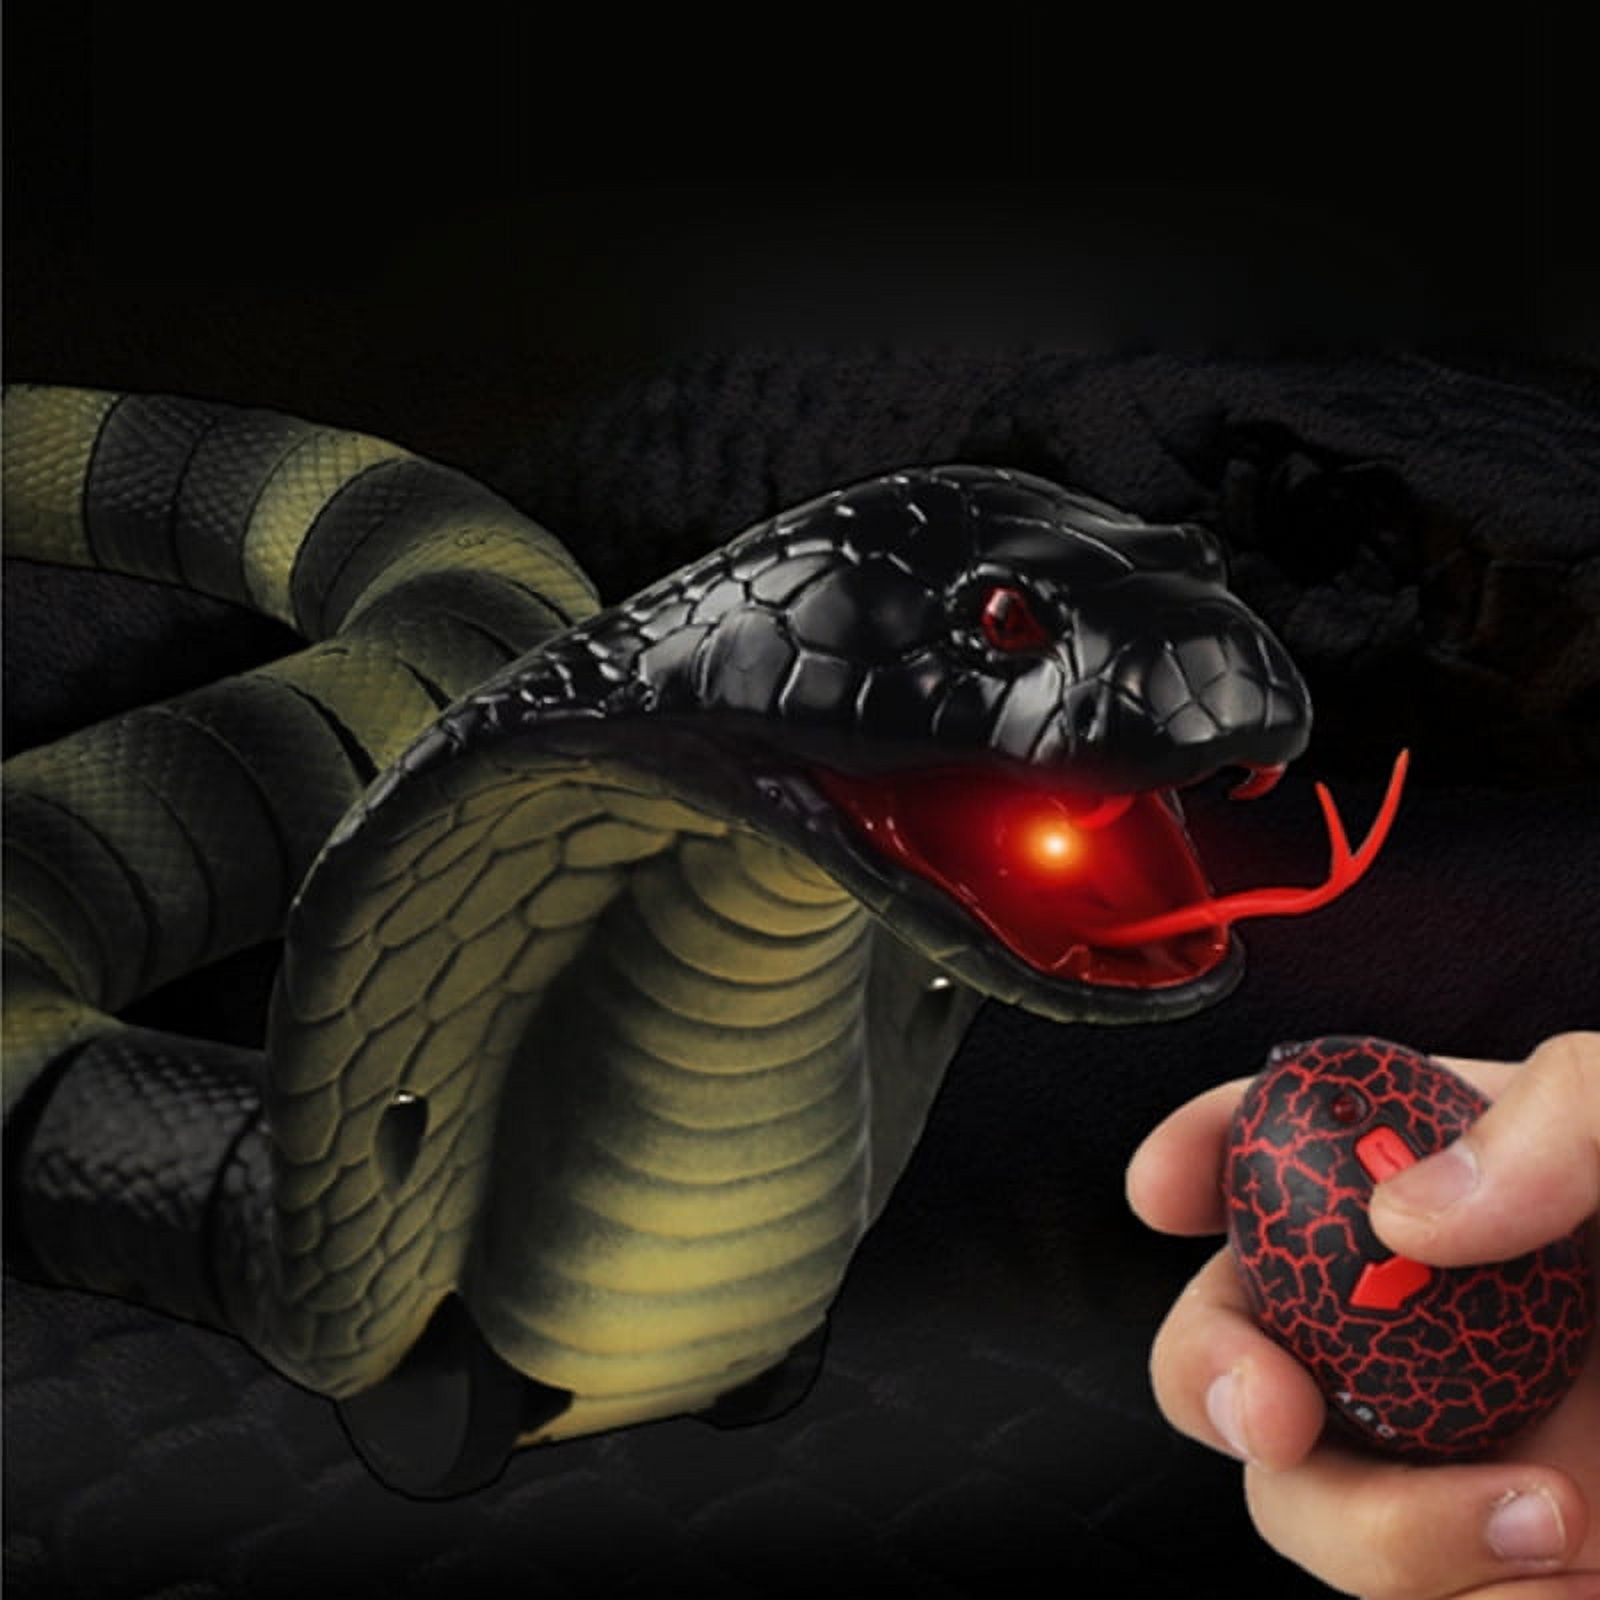 Télécommande simulée Serpent Télécommande électrique Snake Trick Toy